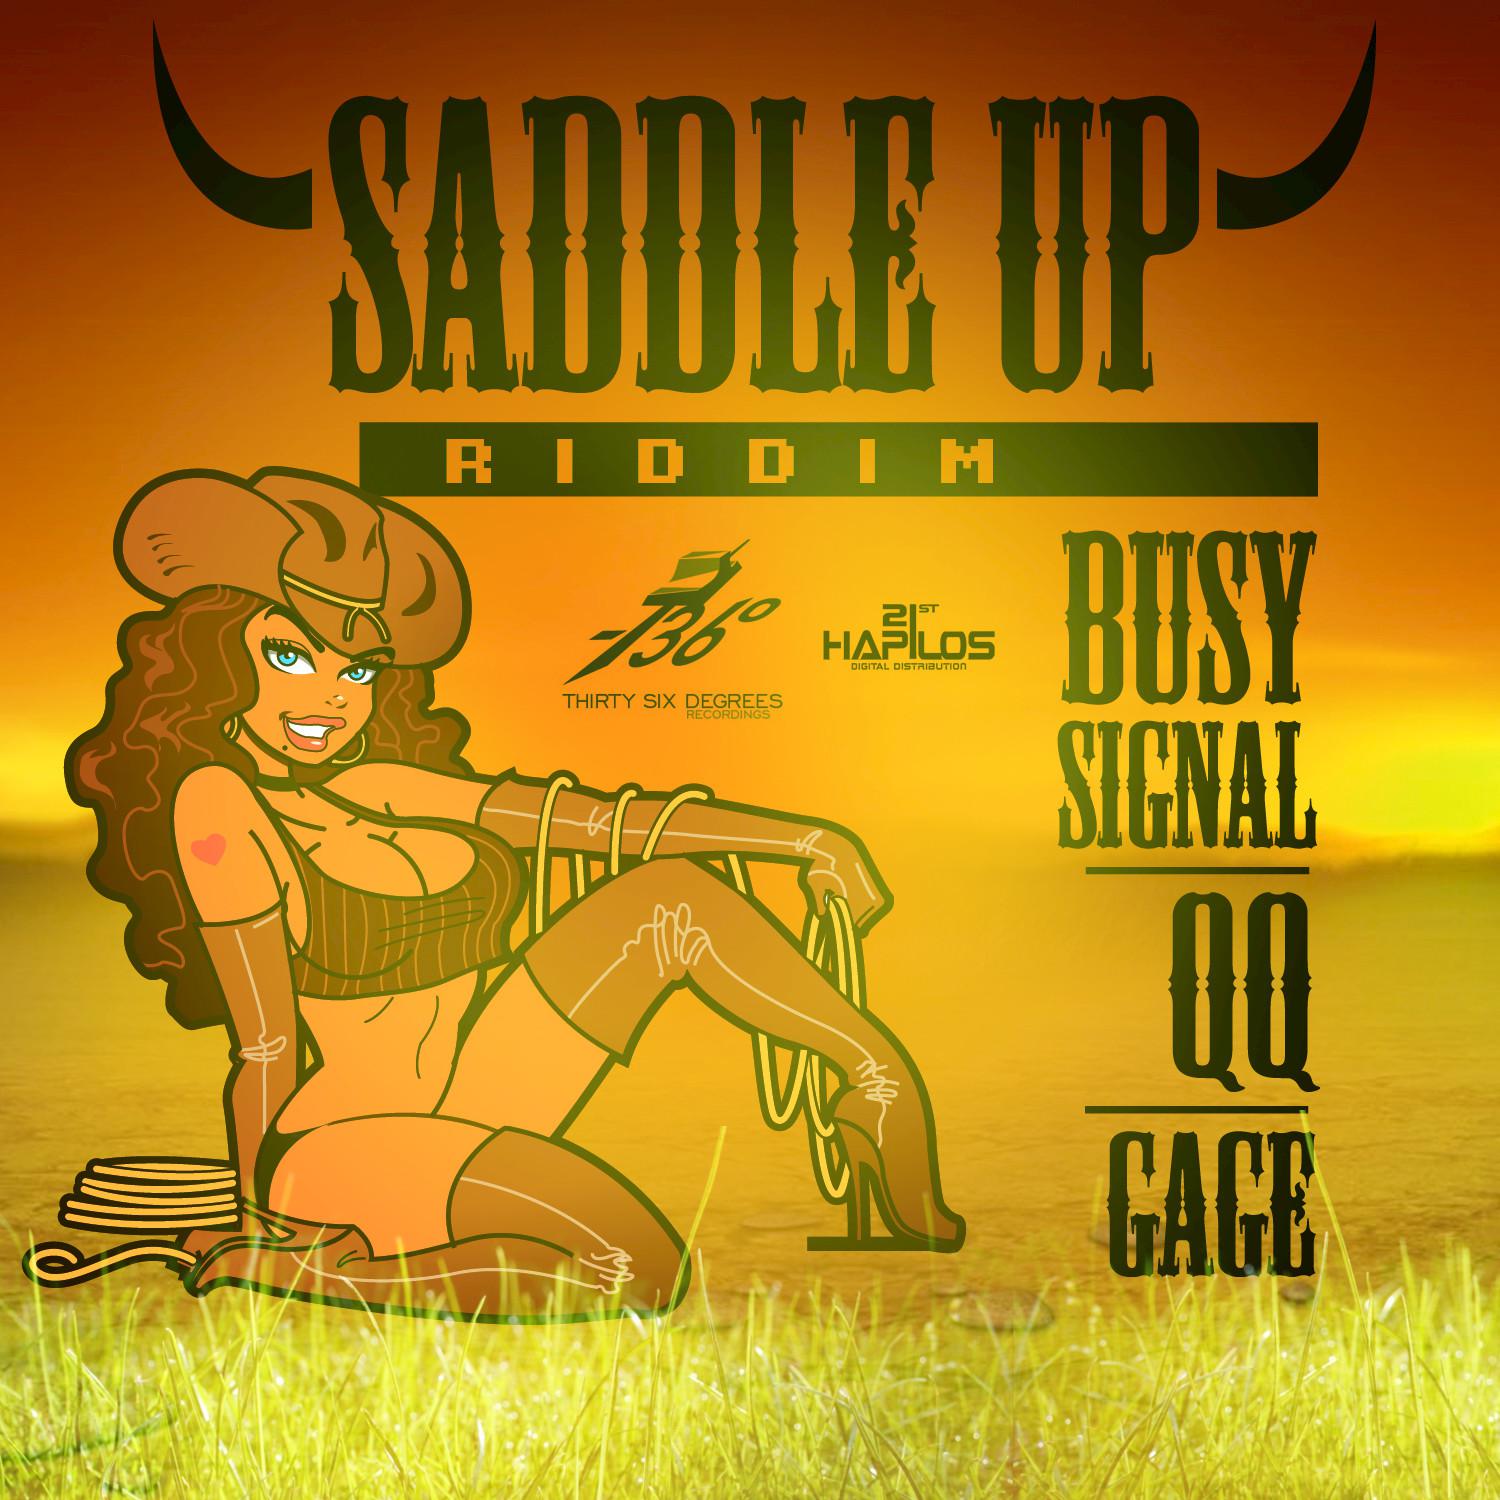 Saddle Up